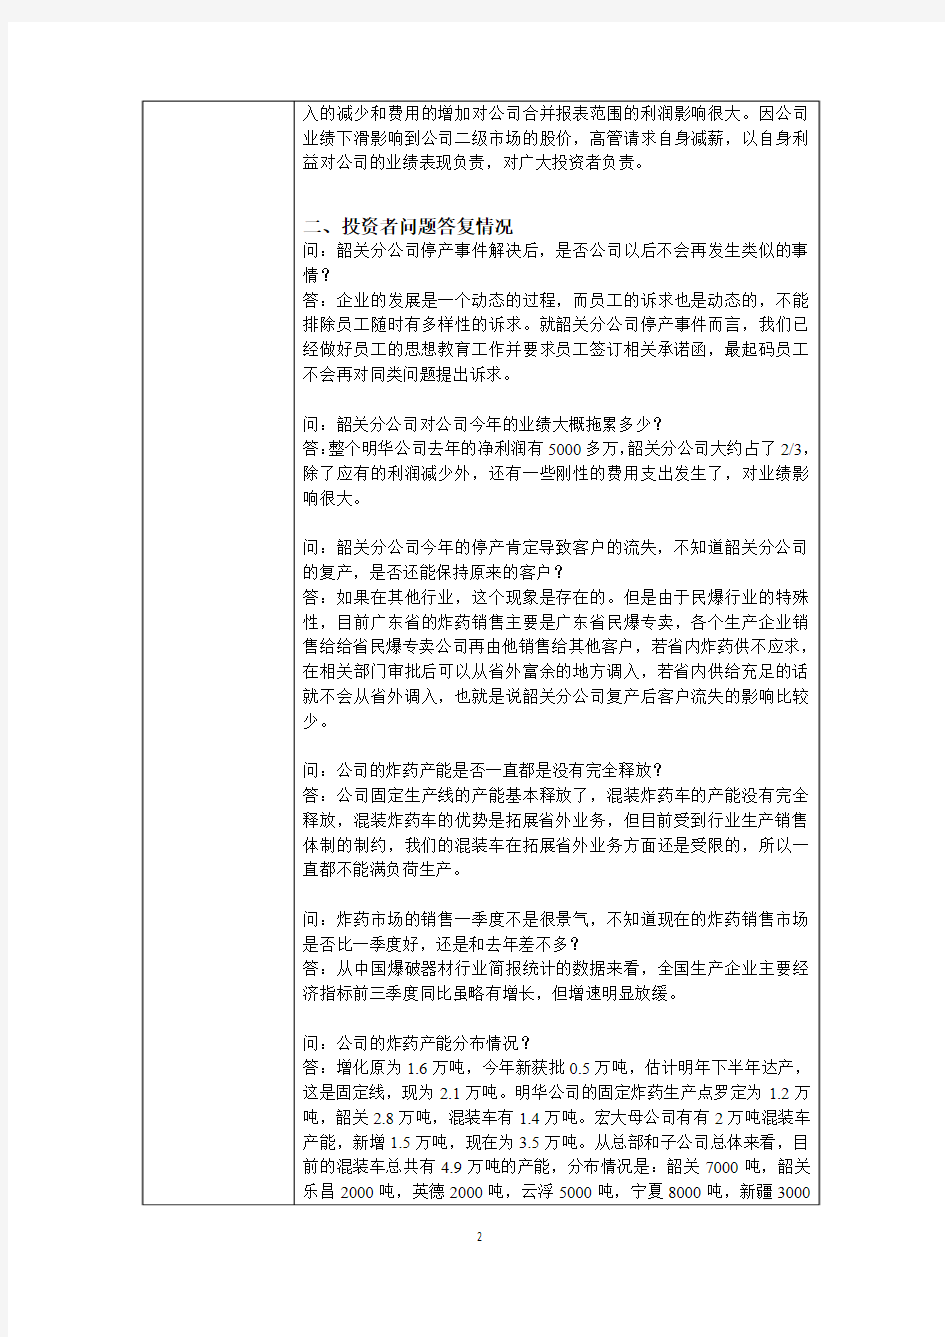 广东宏大爆破股份有限公司投资者关系活动记录表